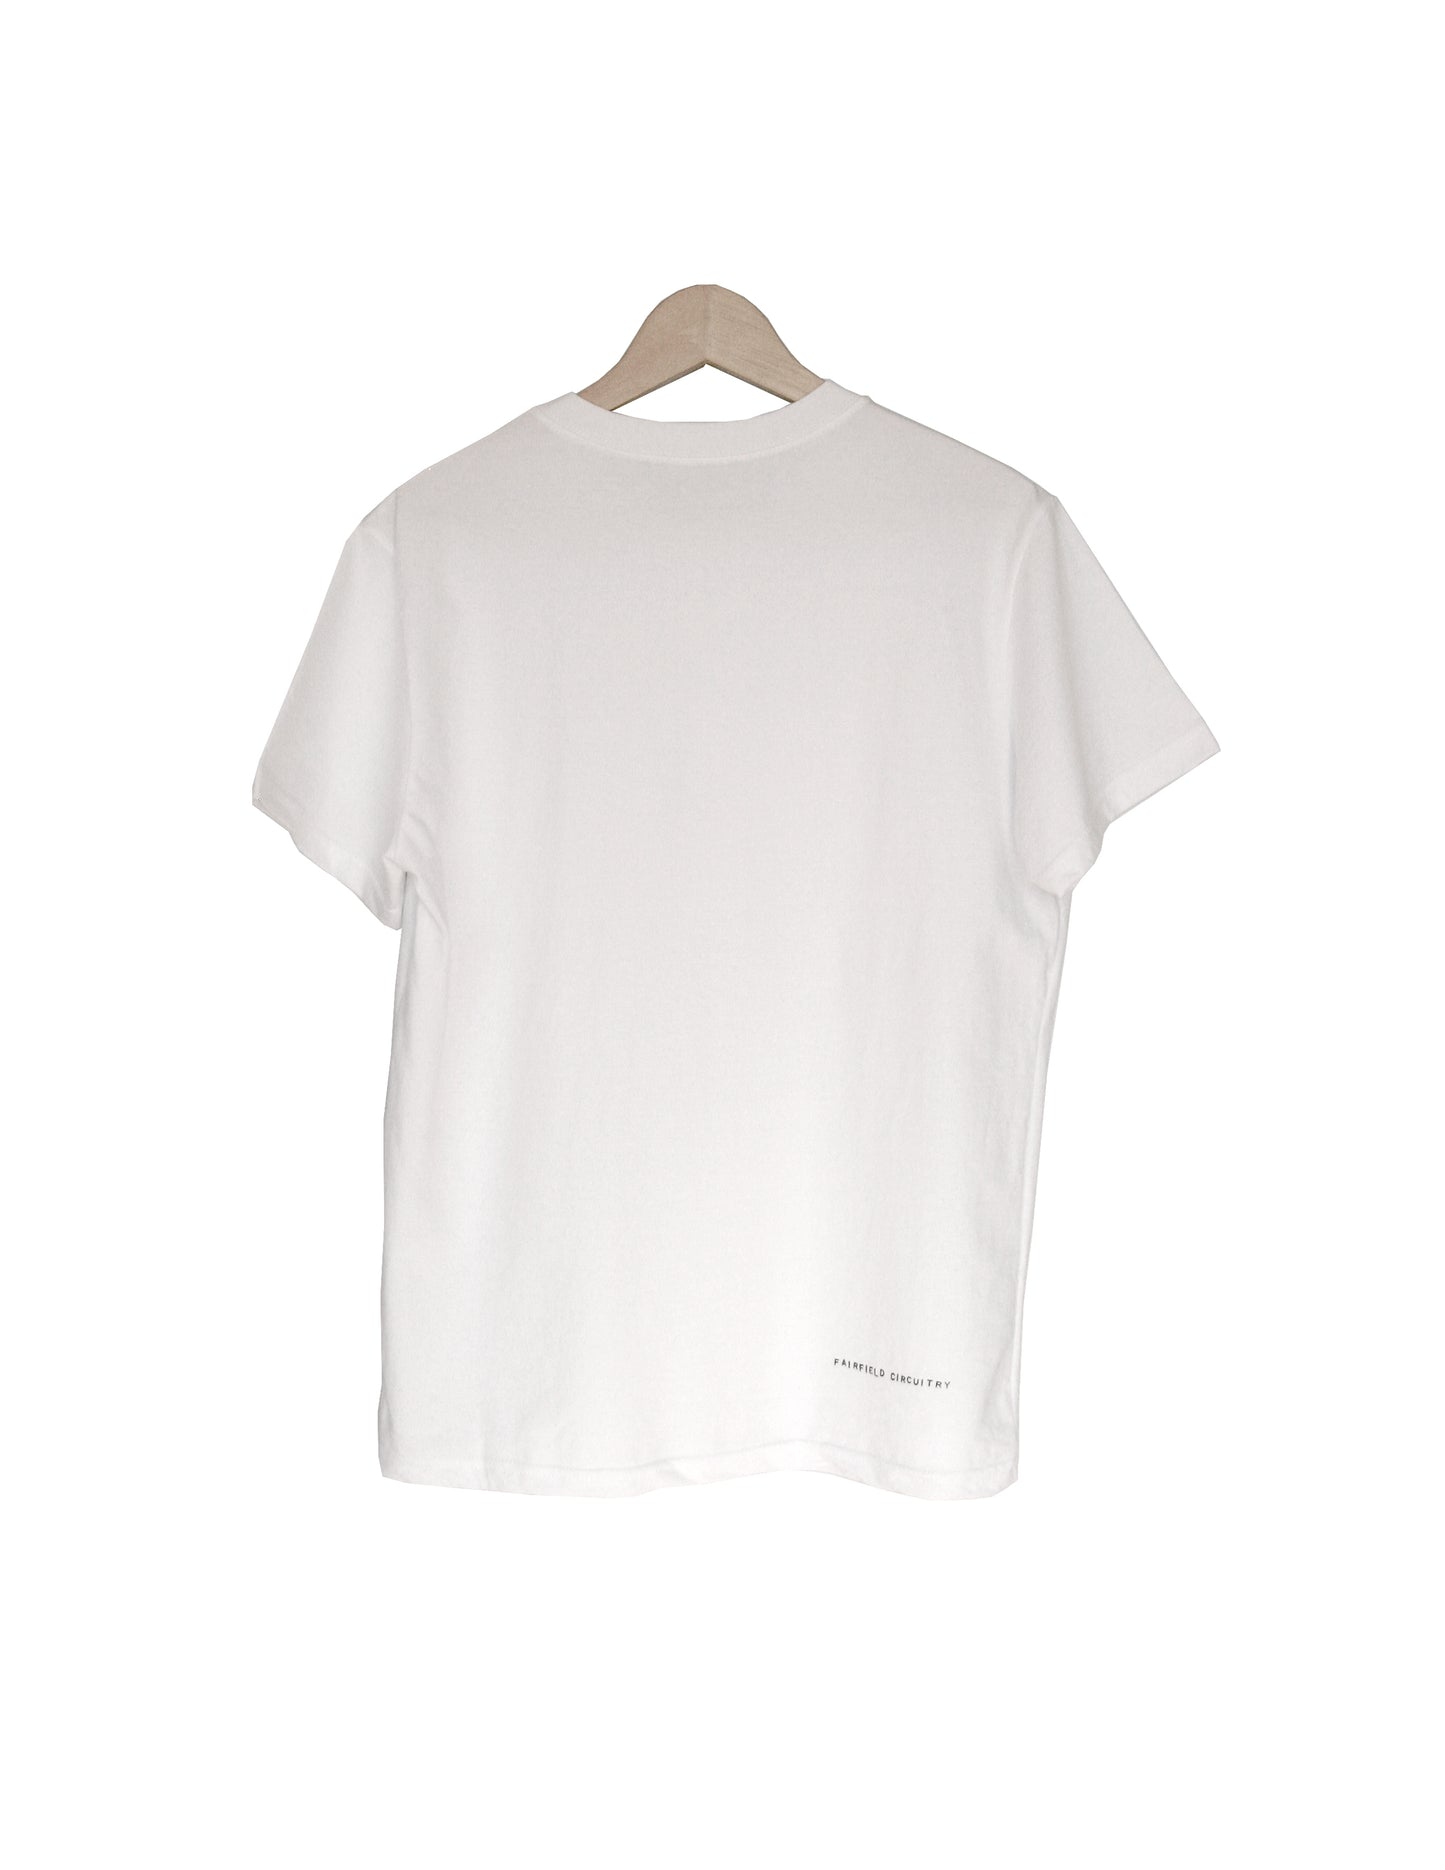 TOPR - Volume 5 - White t-shirt